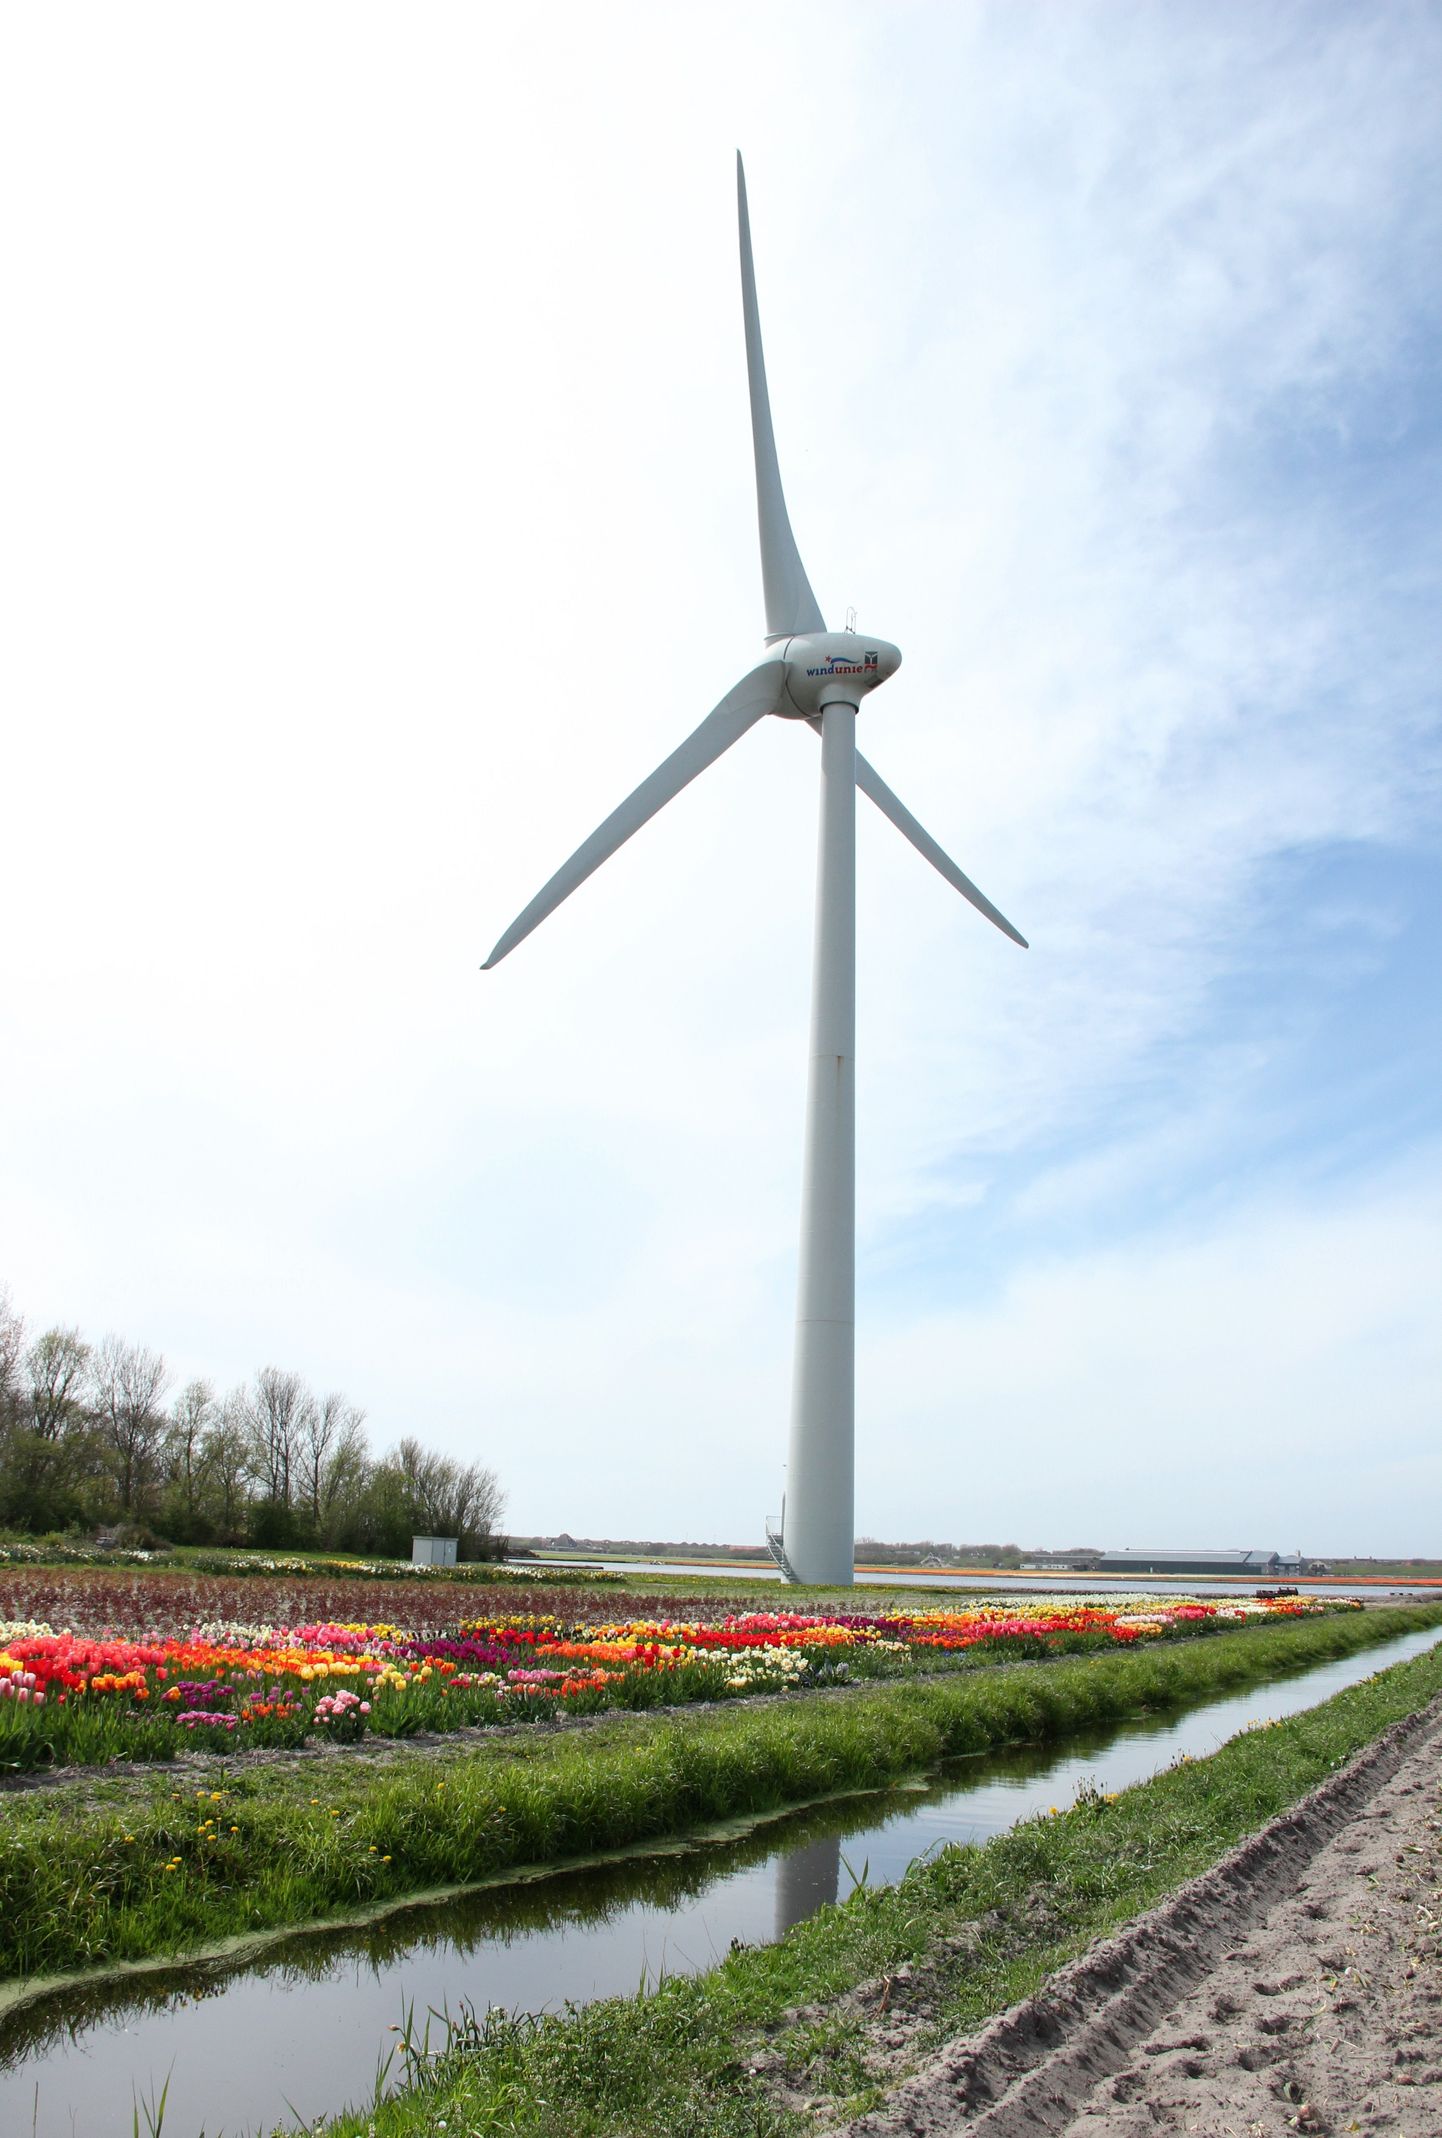 Vēja ģenerators tulpju audzētavā Petenā (Petten), Holandes ziemeļos.